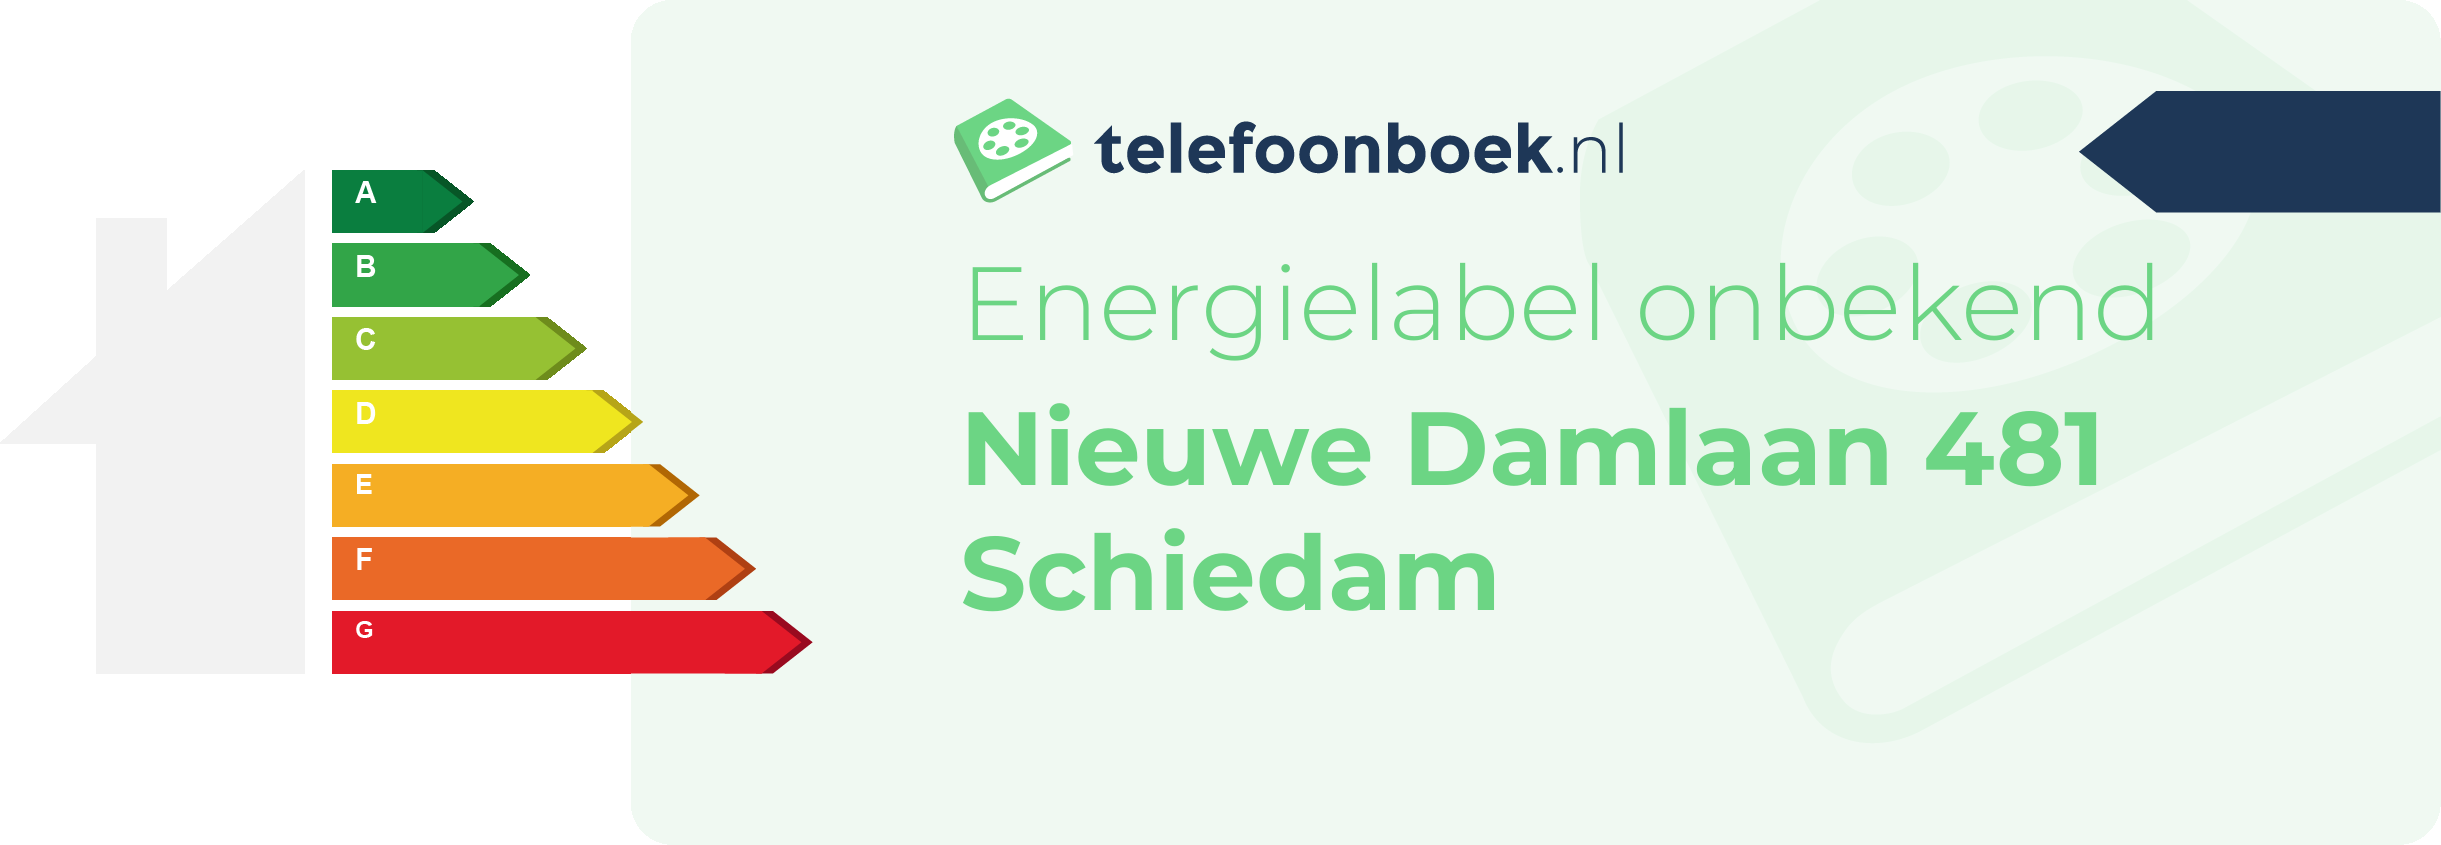 Energielabel Nieuwe Damlaan 481 Schiedam